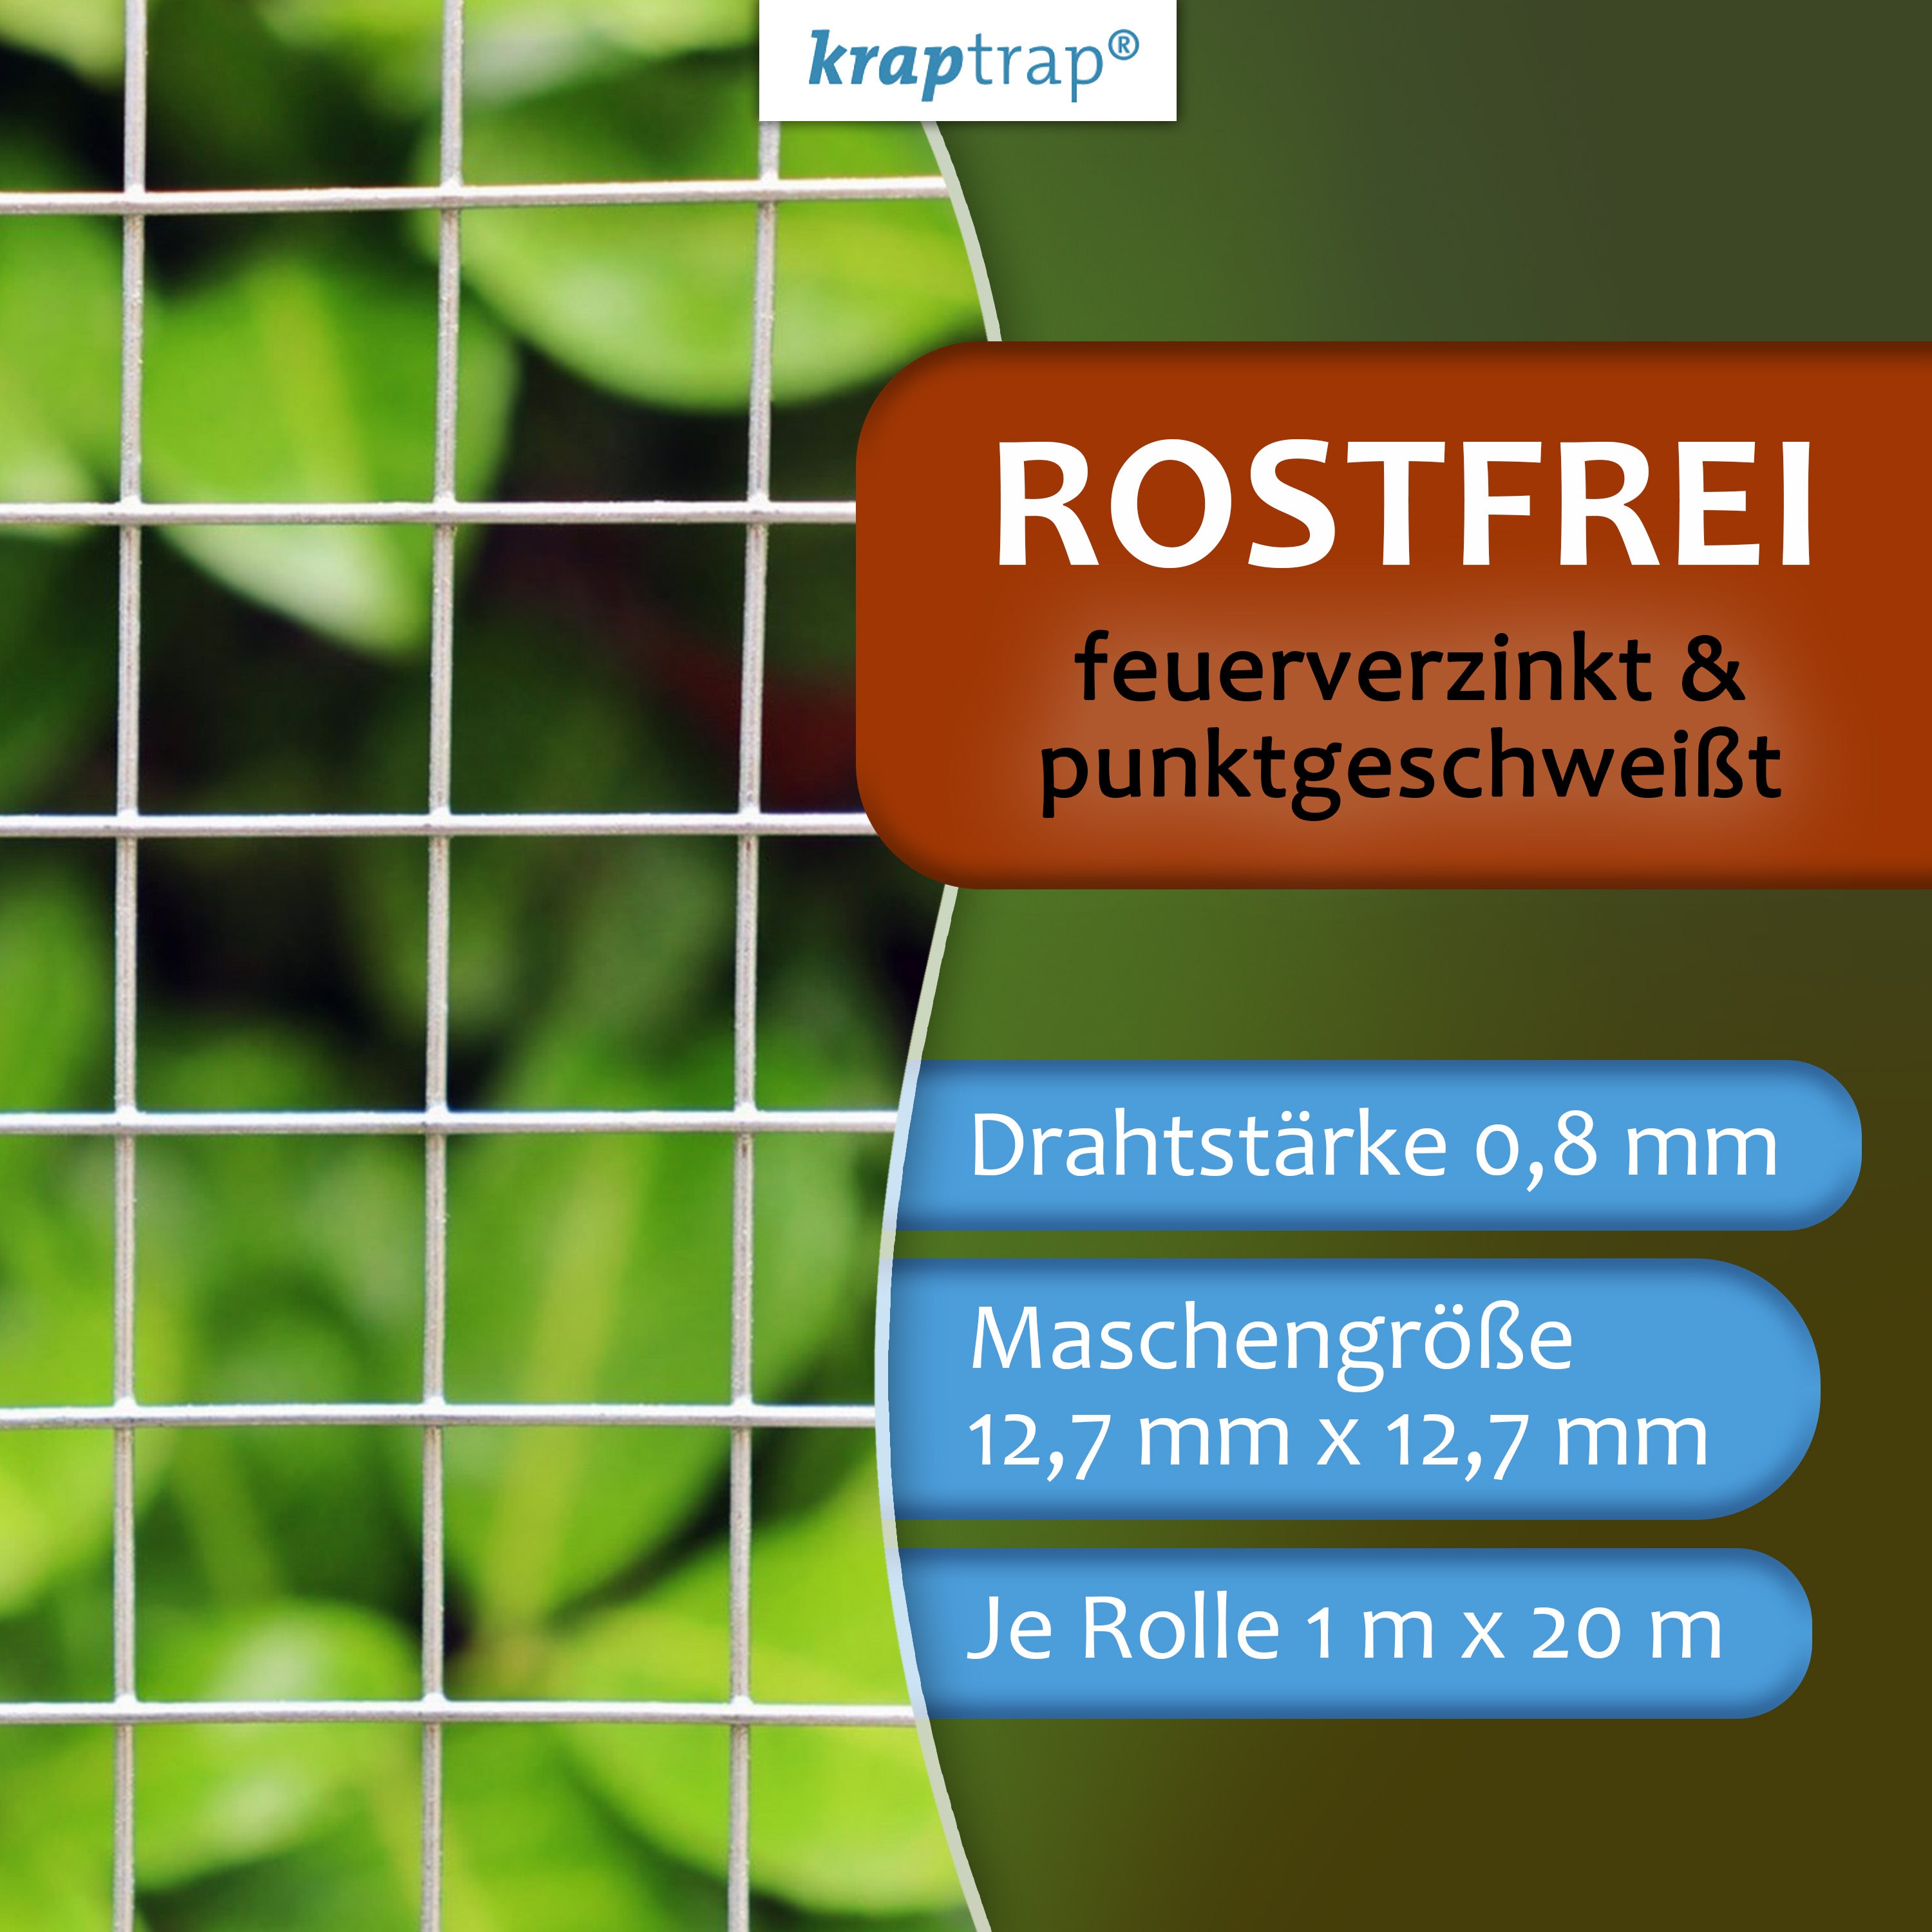 Kraptrap® Volierendraht Drahtgitter 12x12, 100 cm, 0,8mm Drahtstärke